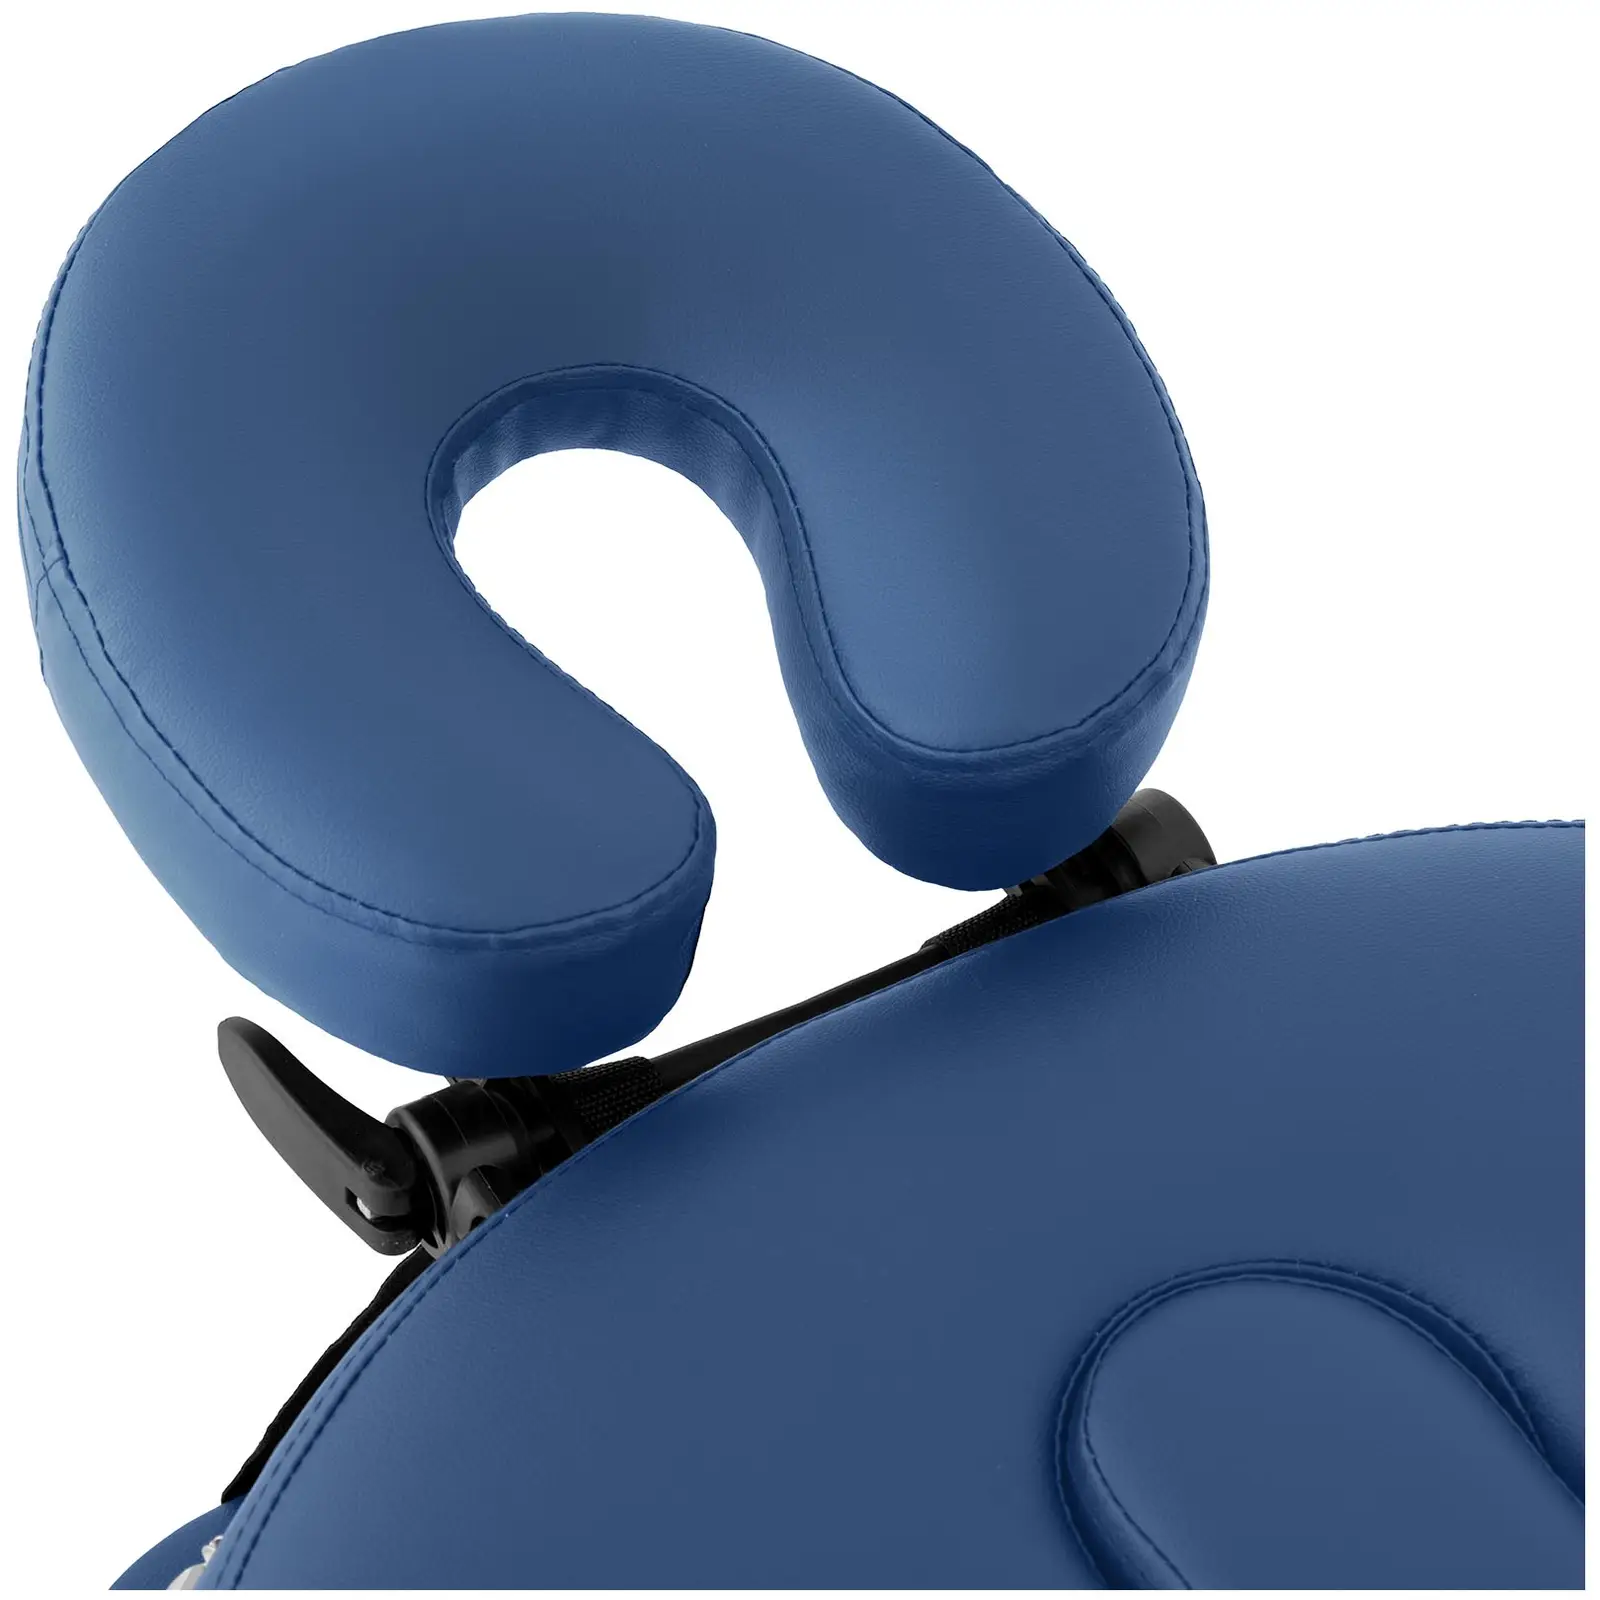 Cama de massagem - 185-211 x 70-88 x 63-85 cm - 227 kg - Azul